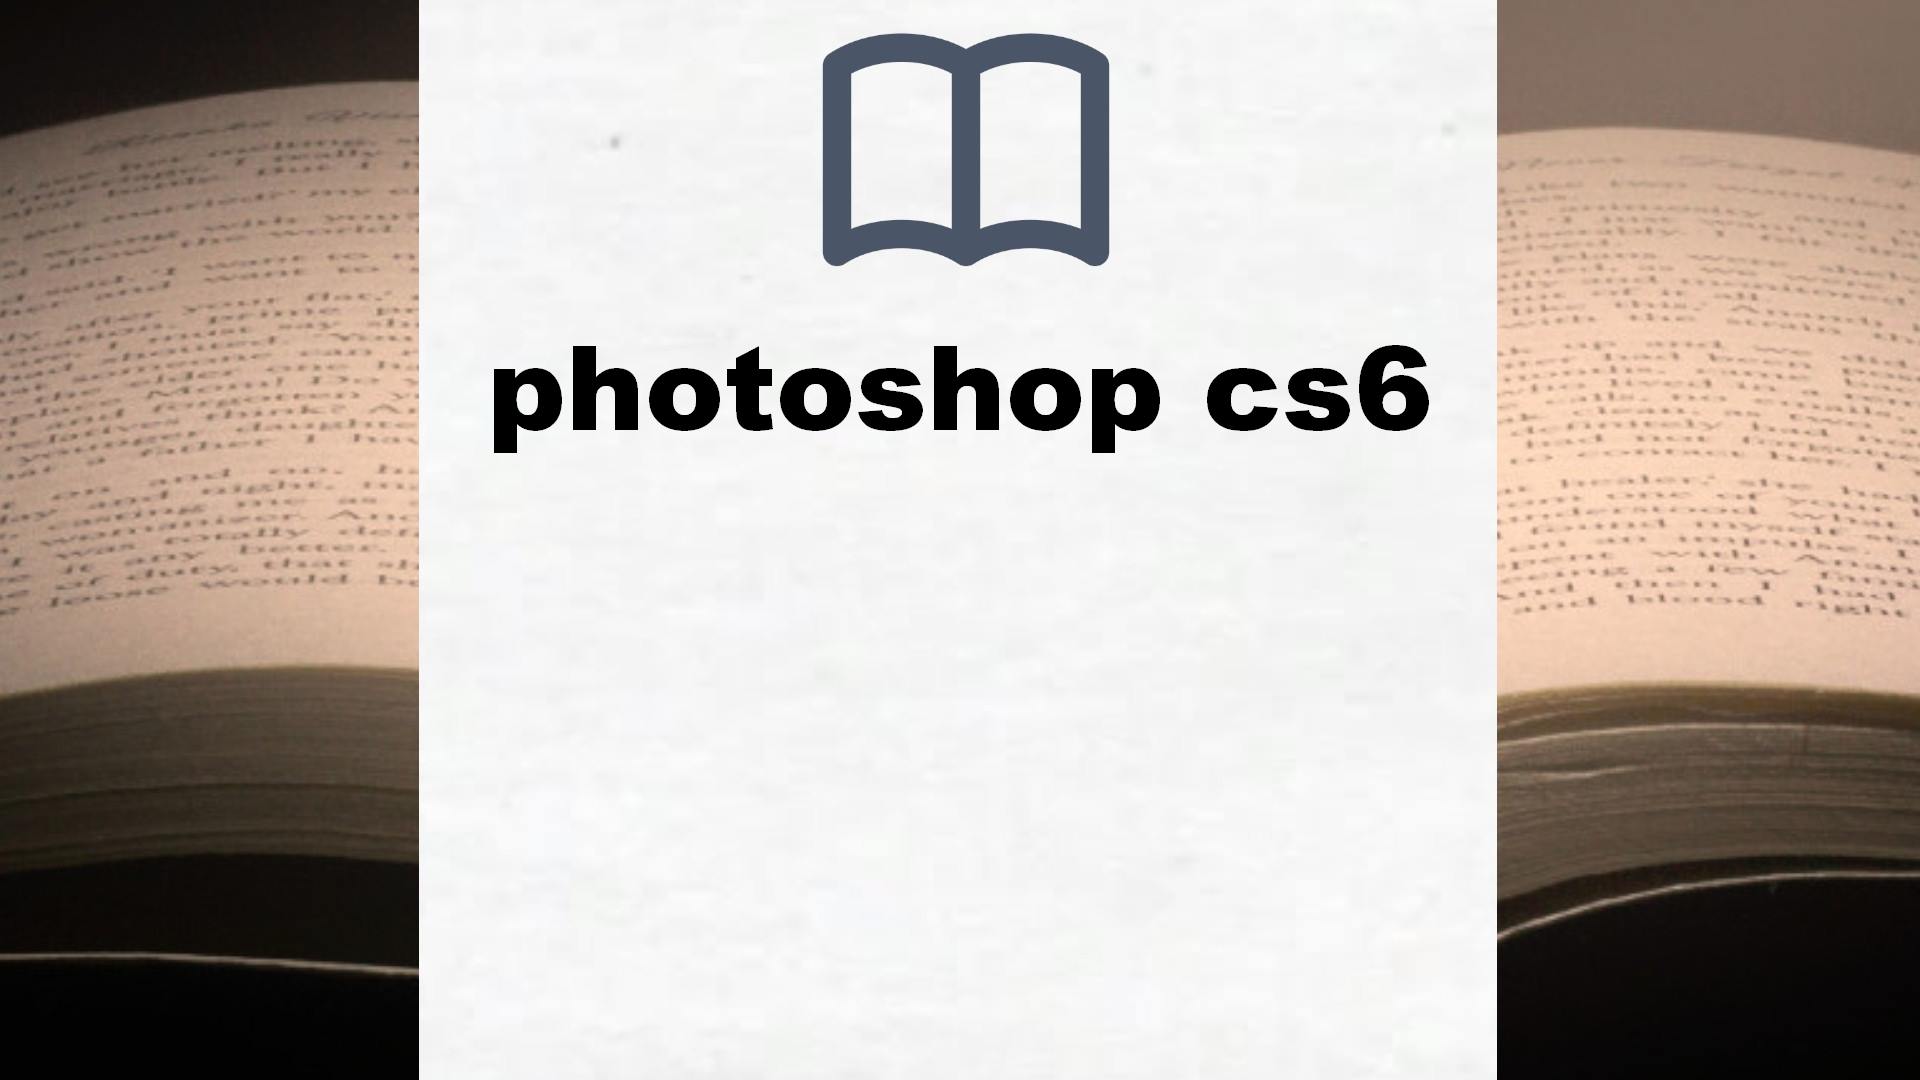 Libros sobre photoshop cs6